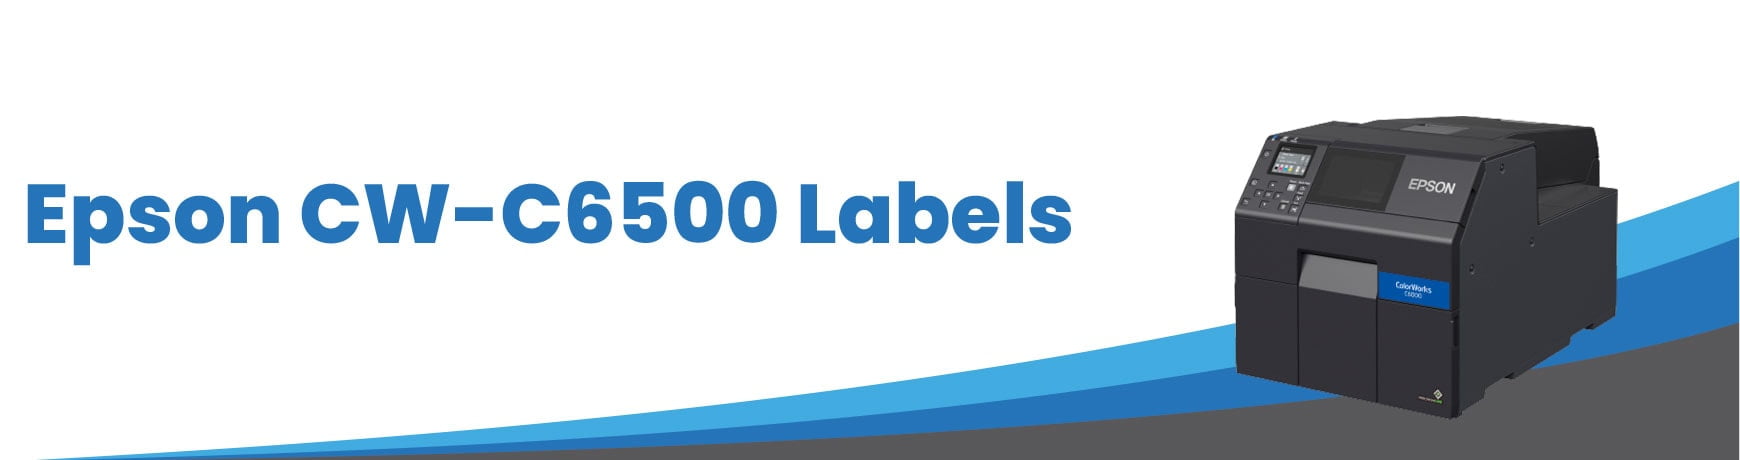 Epson CW-C6500 Labels